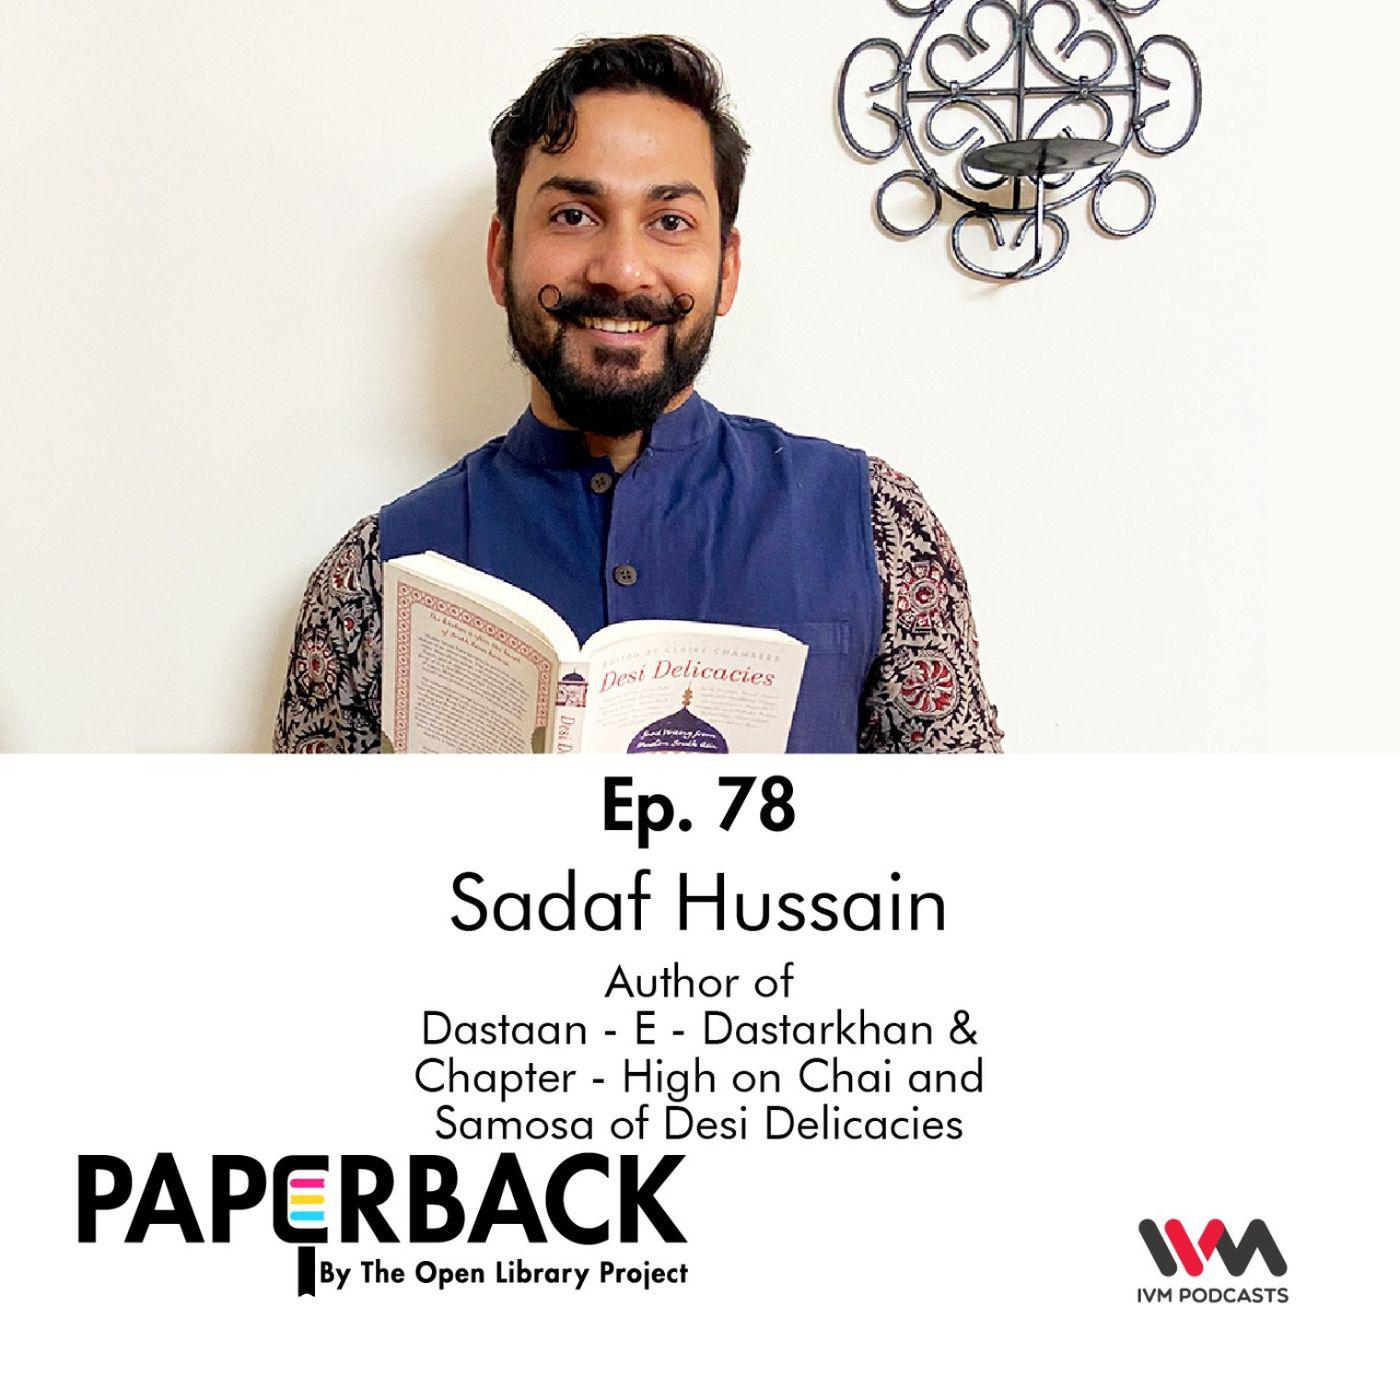 Ep. 78: Sadaf Hussain